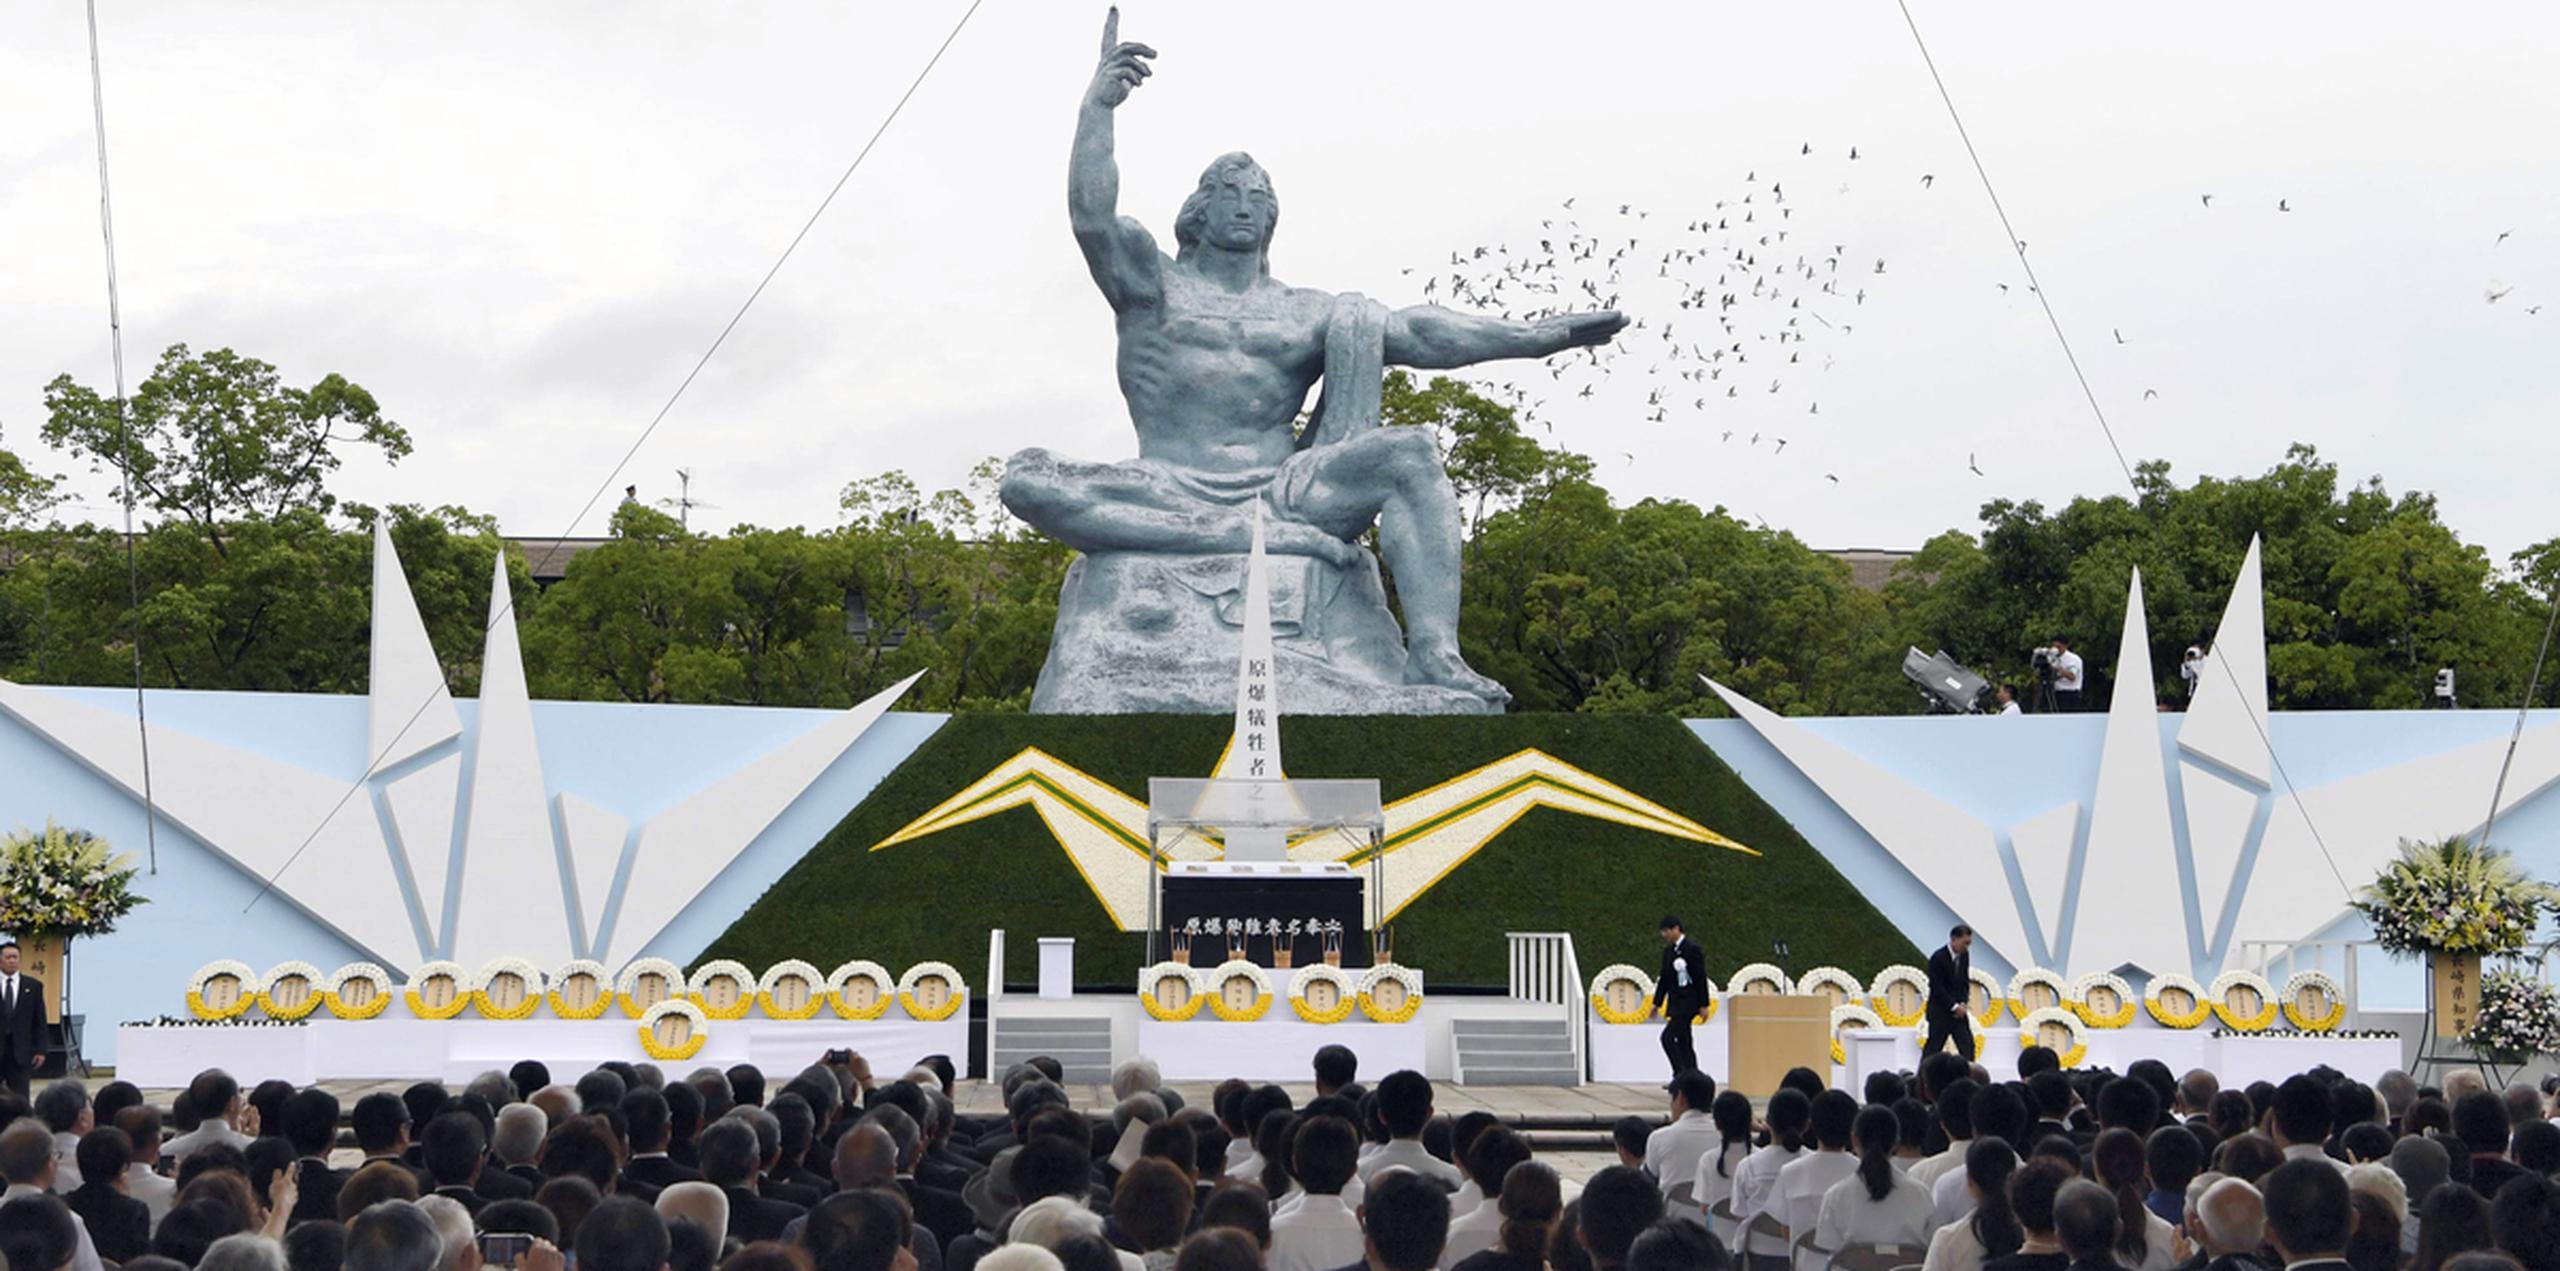 Palomas sobrevuelan la Estatua de la Paz en el Parque de la Paz de Nagasaki, en Nagasaki, en el sur de Japón, durante una ceremonia para conmemorar el 72do aniversario de ataque con bomba atómica sobre la ciudad. (AP)